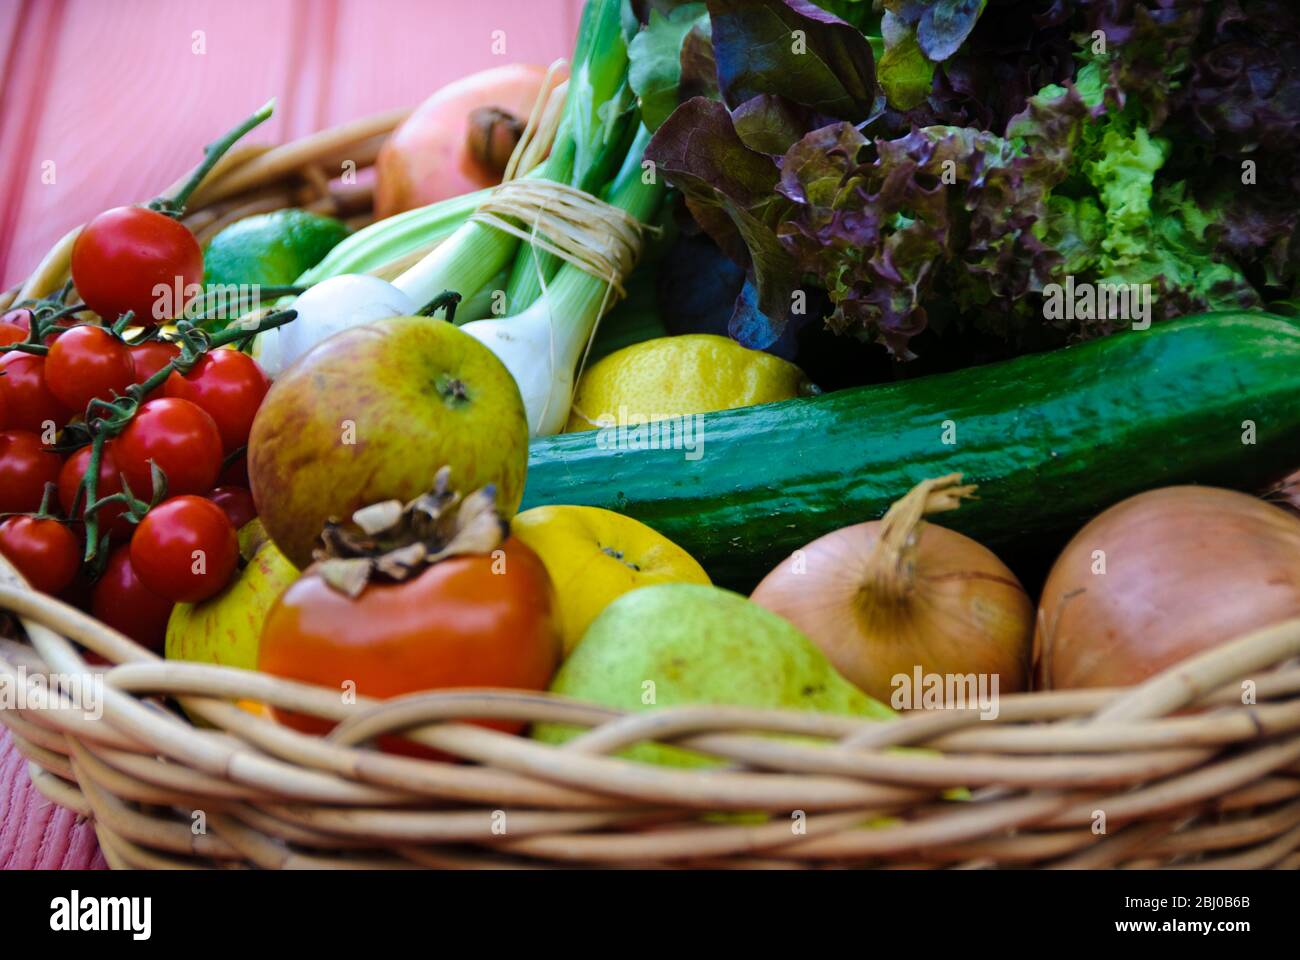 Korb mit frischem Obst und Gemüse auf roter Oberfläche - Stockfoto